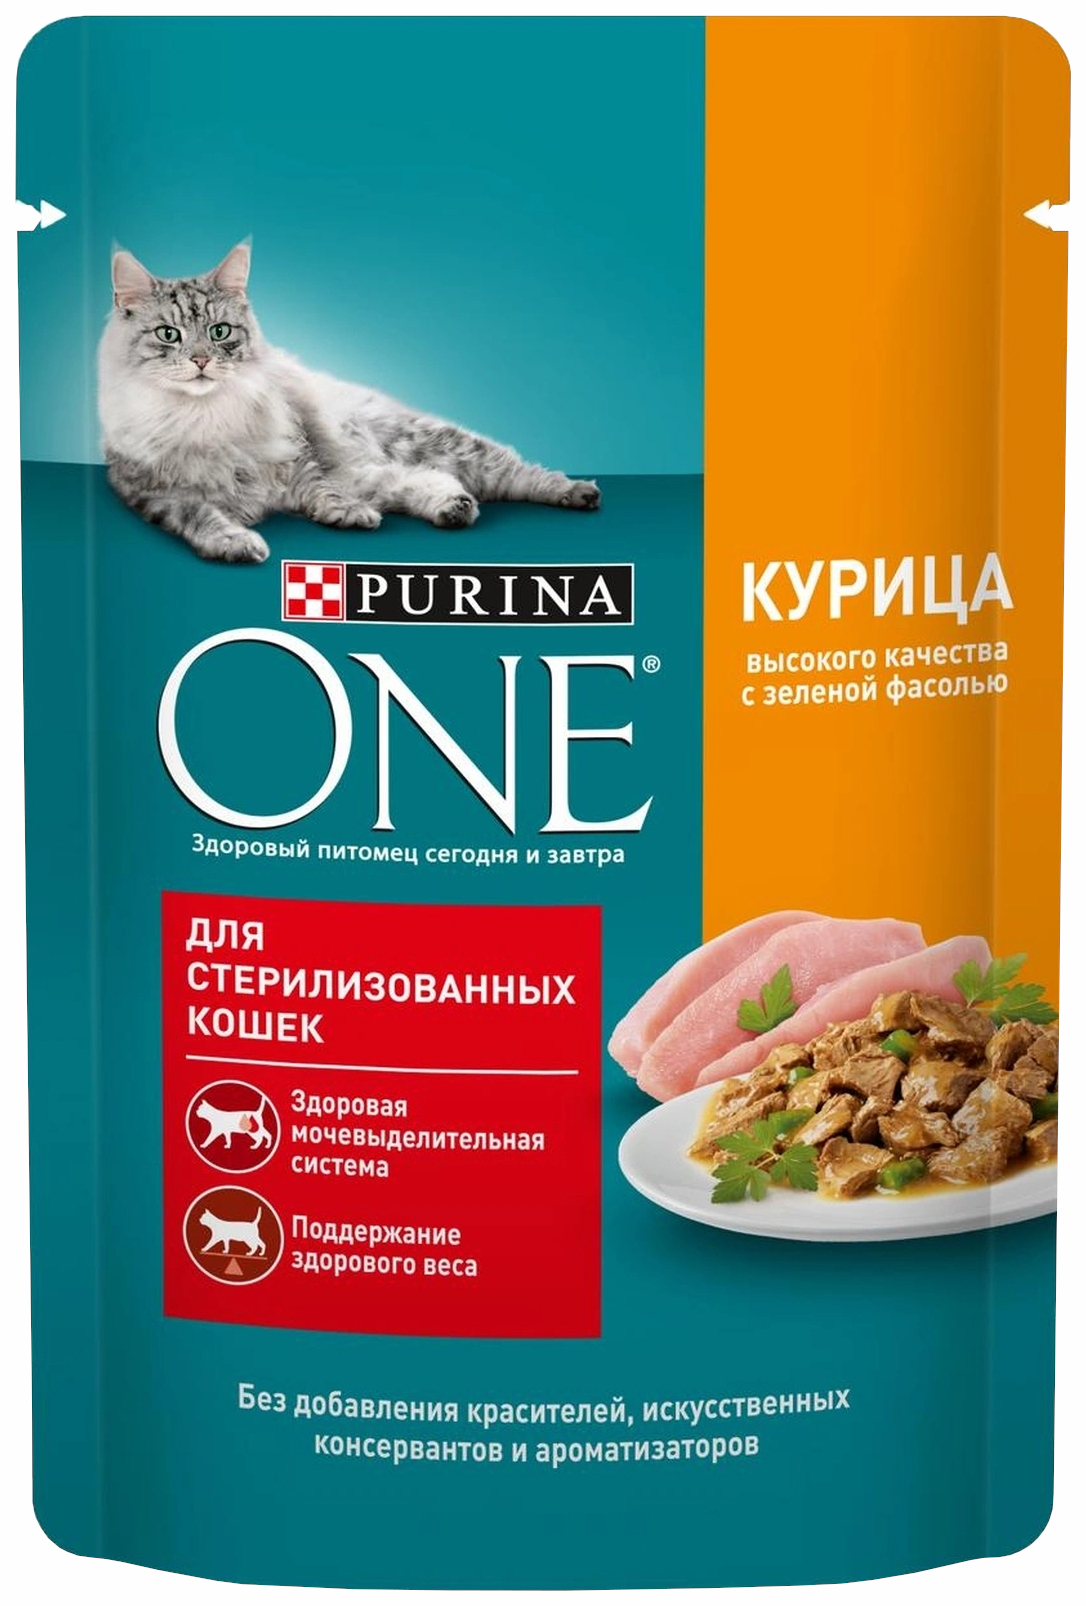 Влажный корм для кошек Purinа one для стерилизованных, курица, фасоль, 26 шт по 75 г